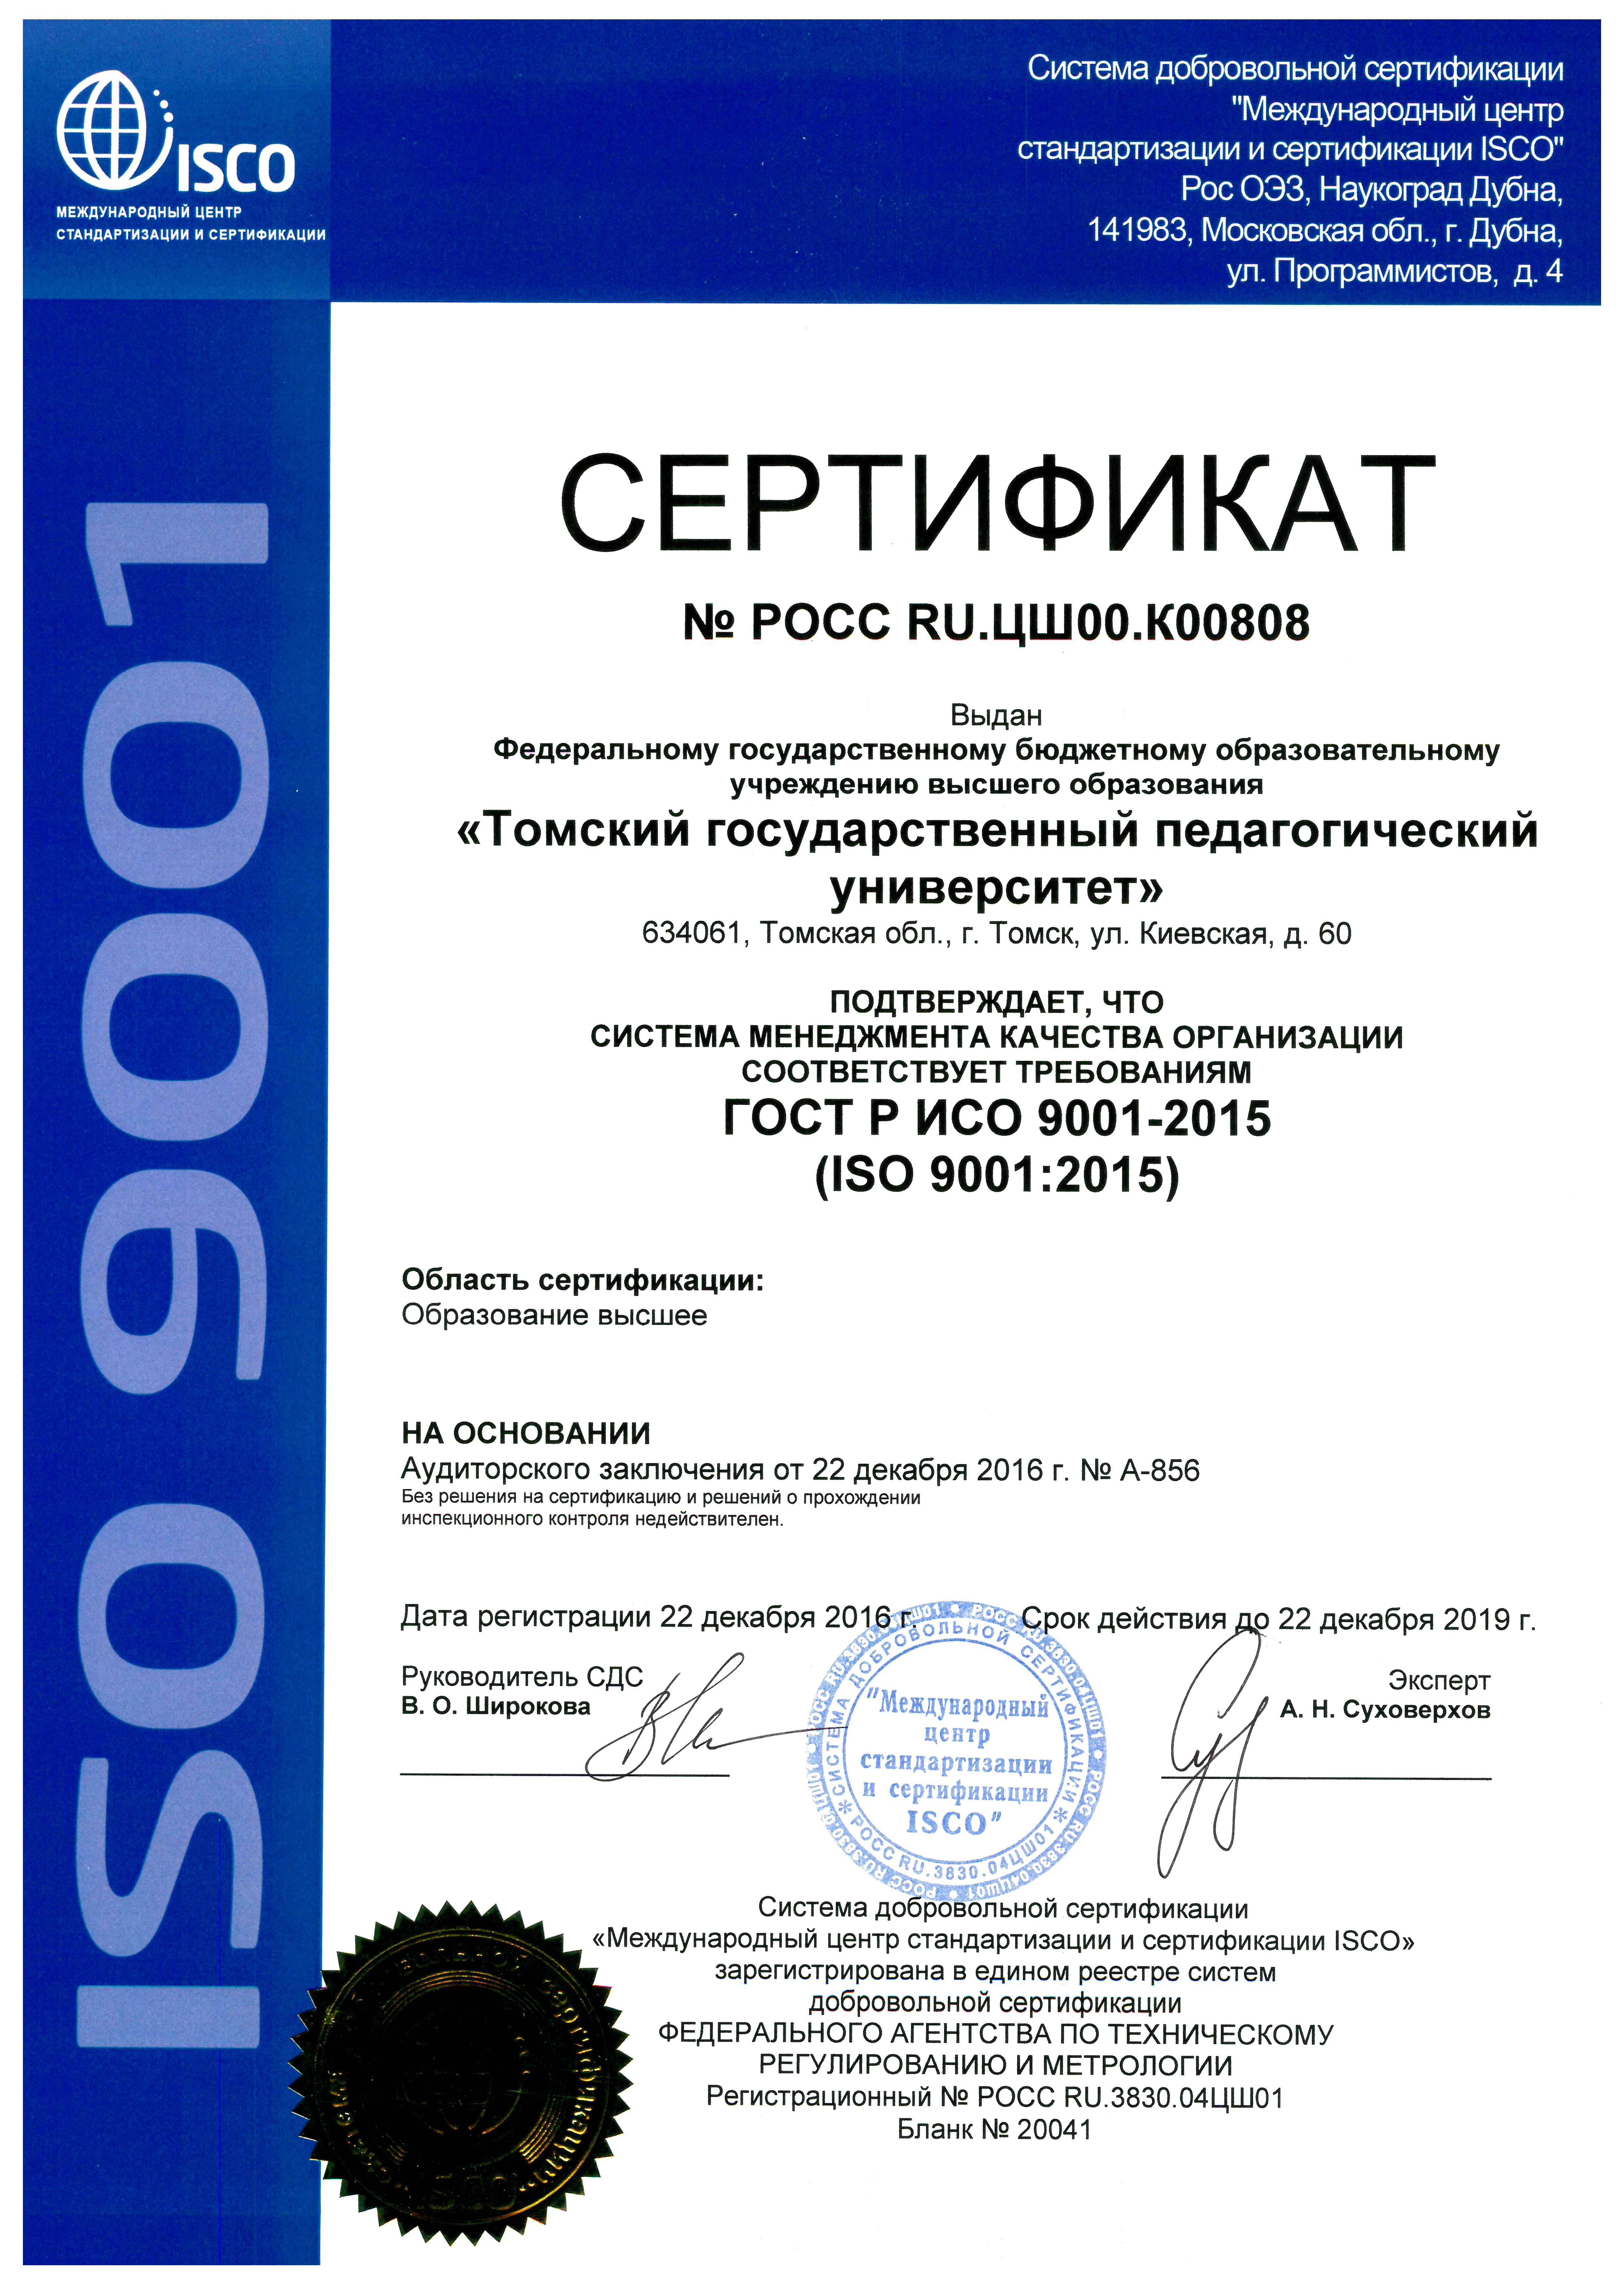 Сертификаты ис. Сертификат ИСО 9001‒2015.«системы менеджмента качества». Сертификат качества ИСО 9001. Сертификат международной системы менеджмента качества ISO 9001. Сертификат соответствия СМК ISO 9001.